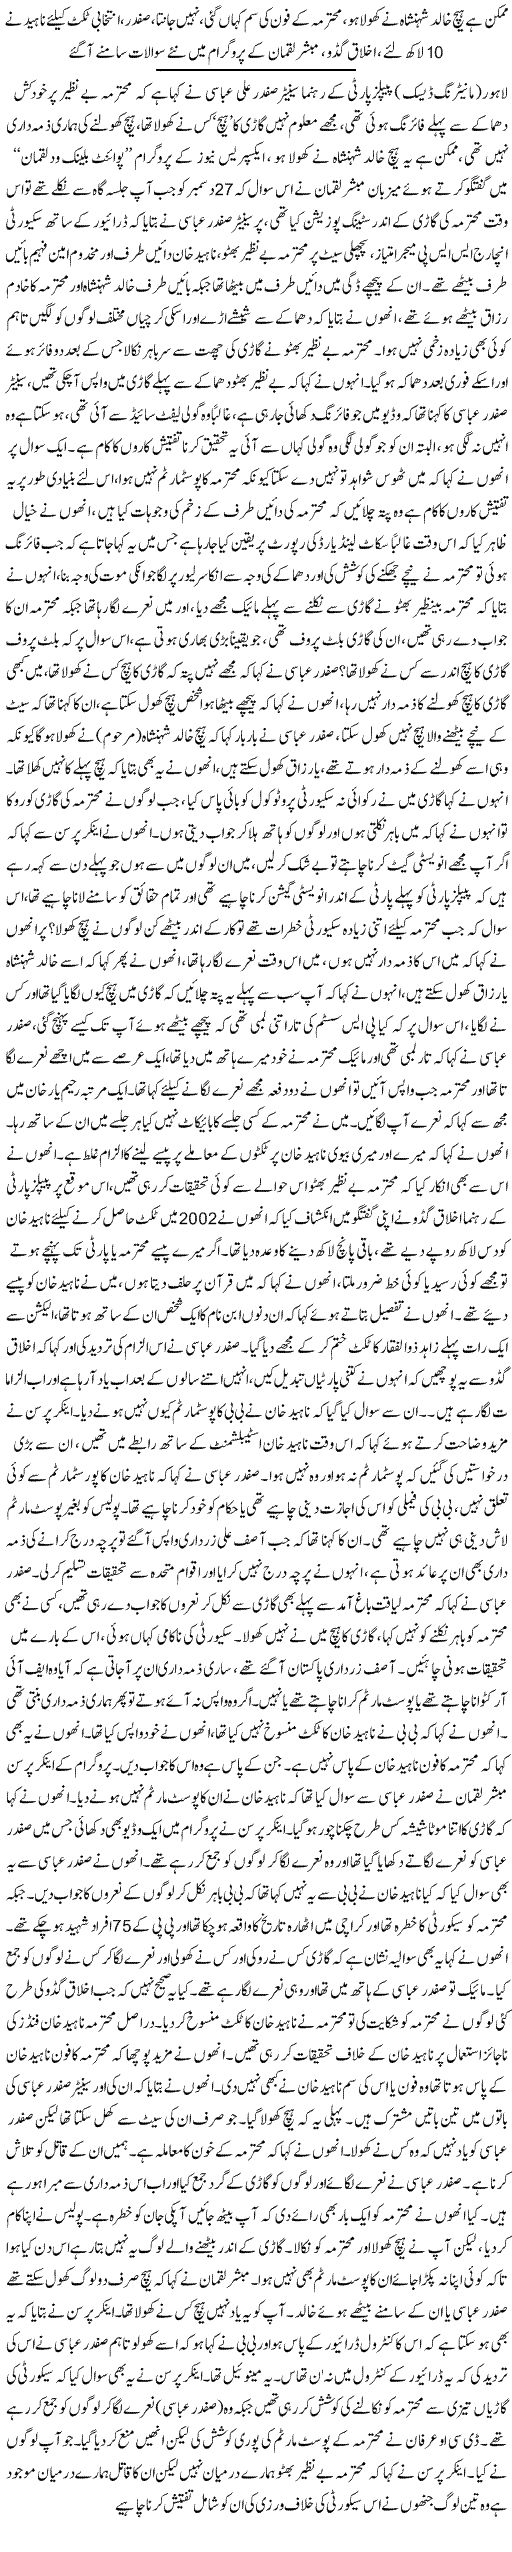 Facts About Benazir Murder - Urdu National News